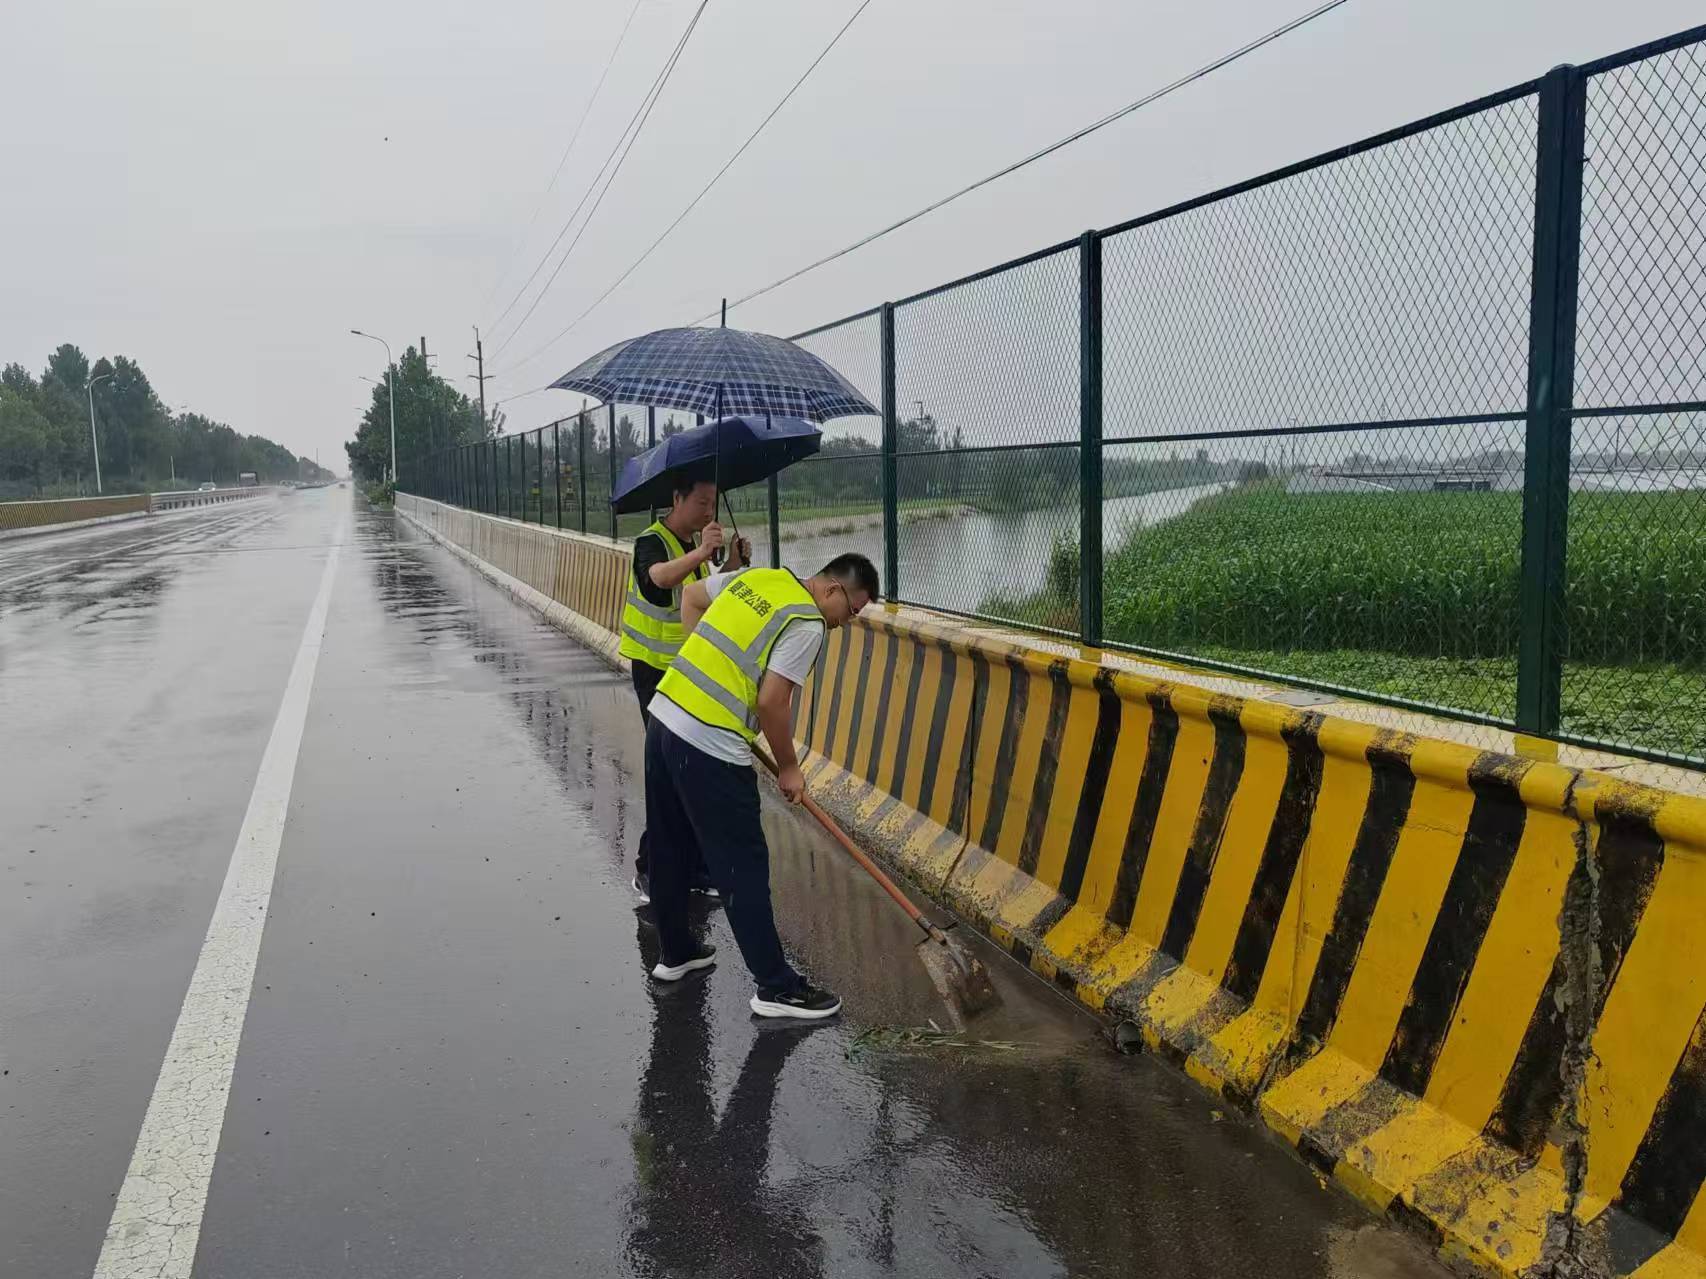 夏津公路分中心全力做好雨天道路保通保畅工作